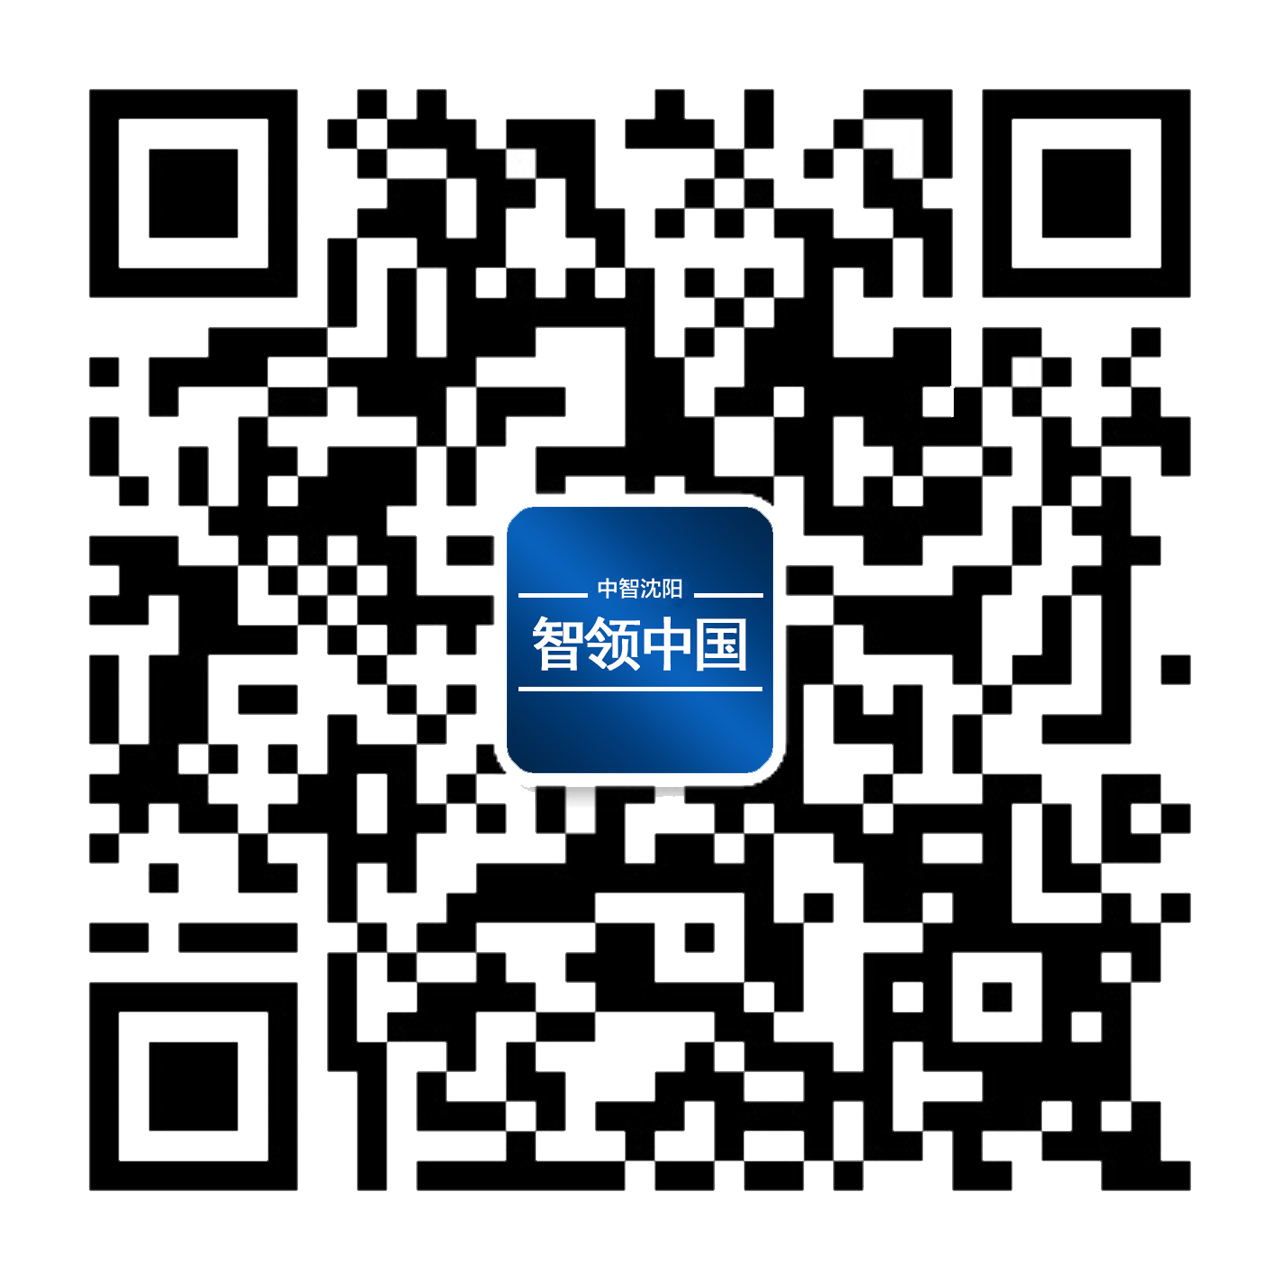 关于当前产品18dj18手机版客户端·(中国)官方网站的成功案例等相关图片